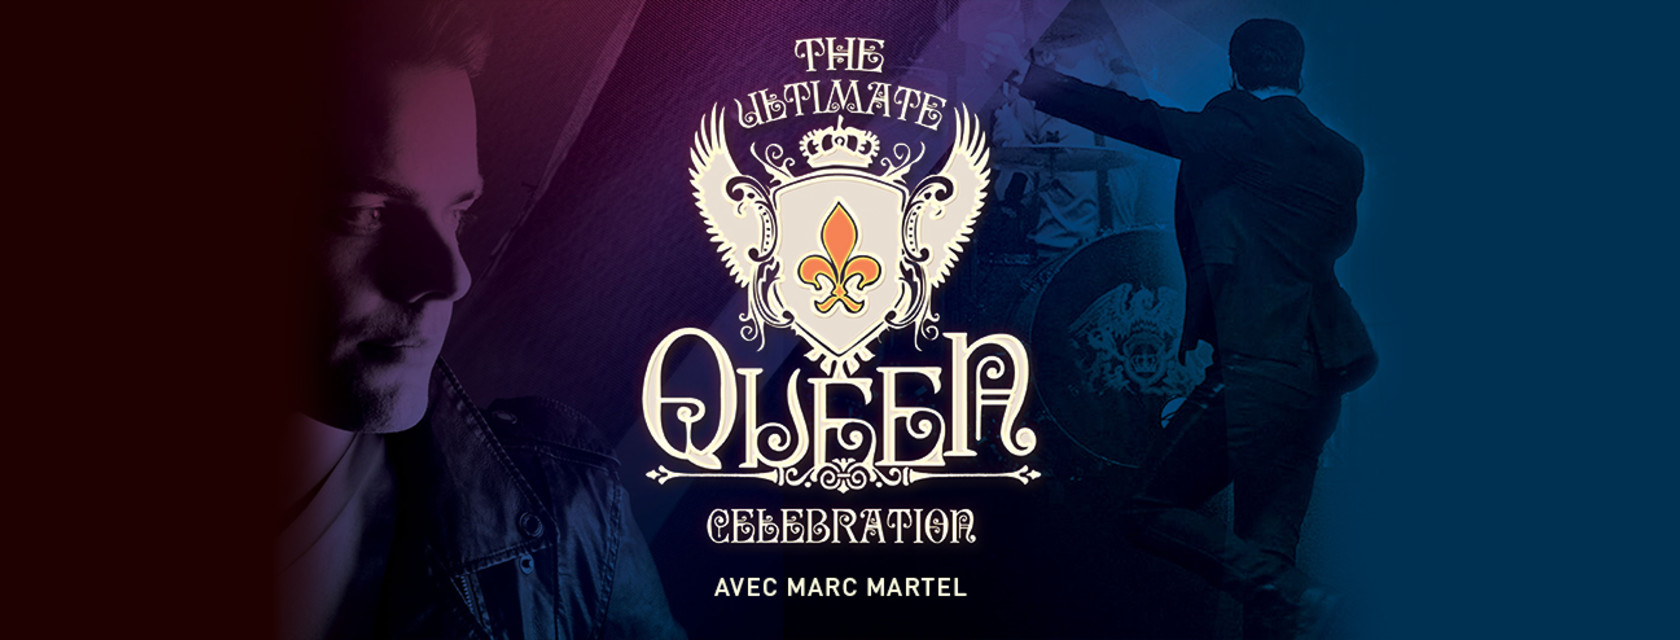 The Ultimate Queen Celebration à l'Amphithéâtre Cogeco